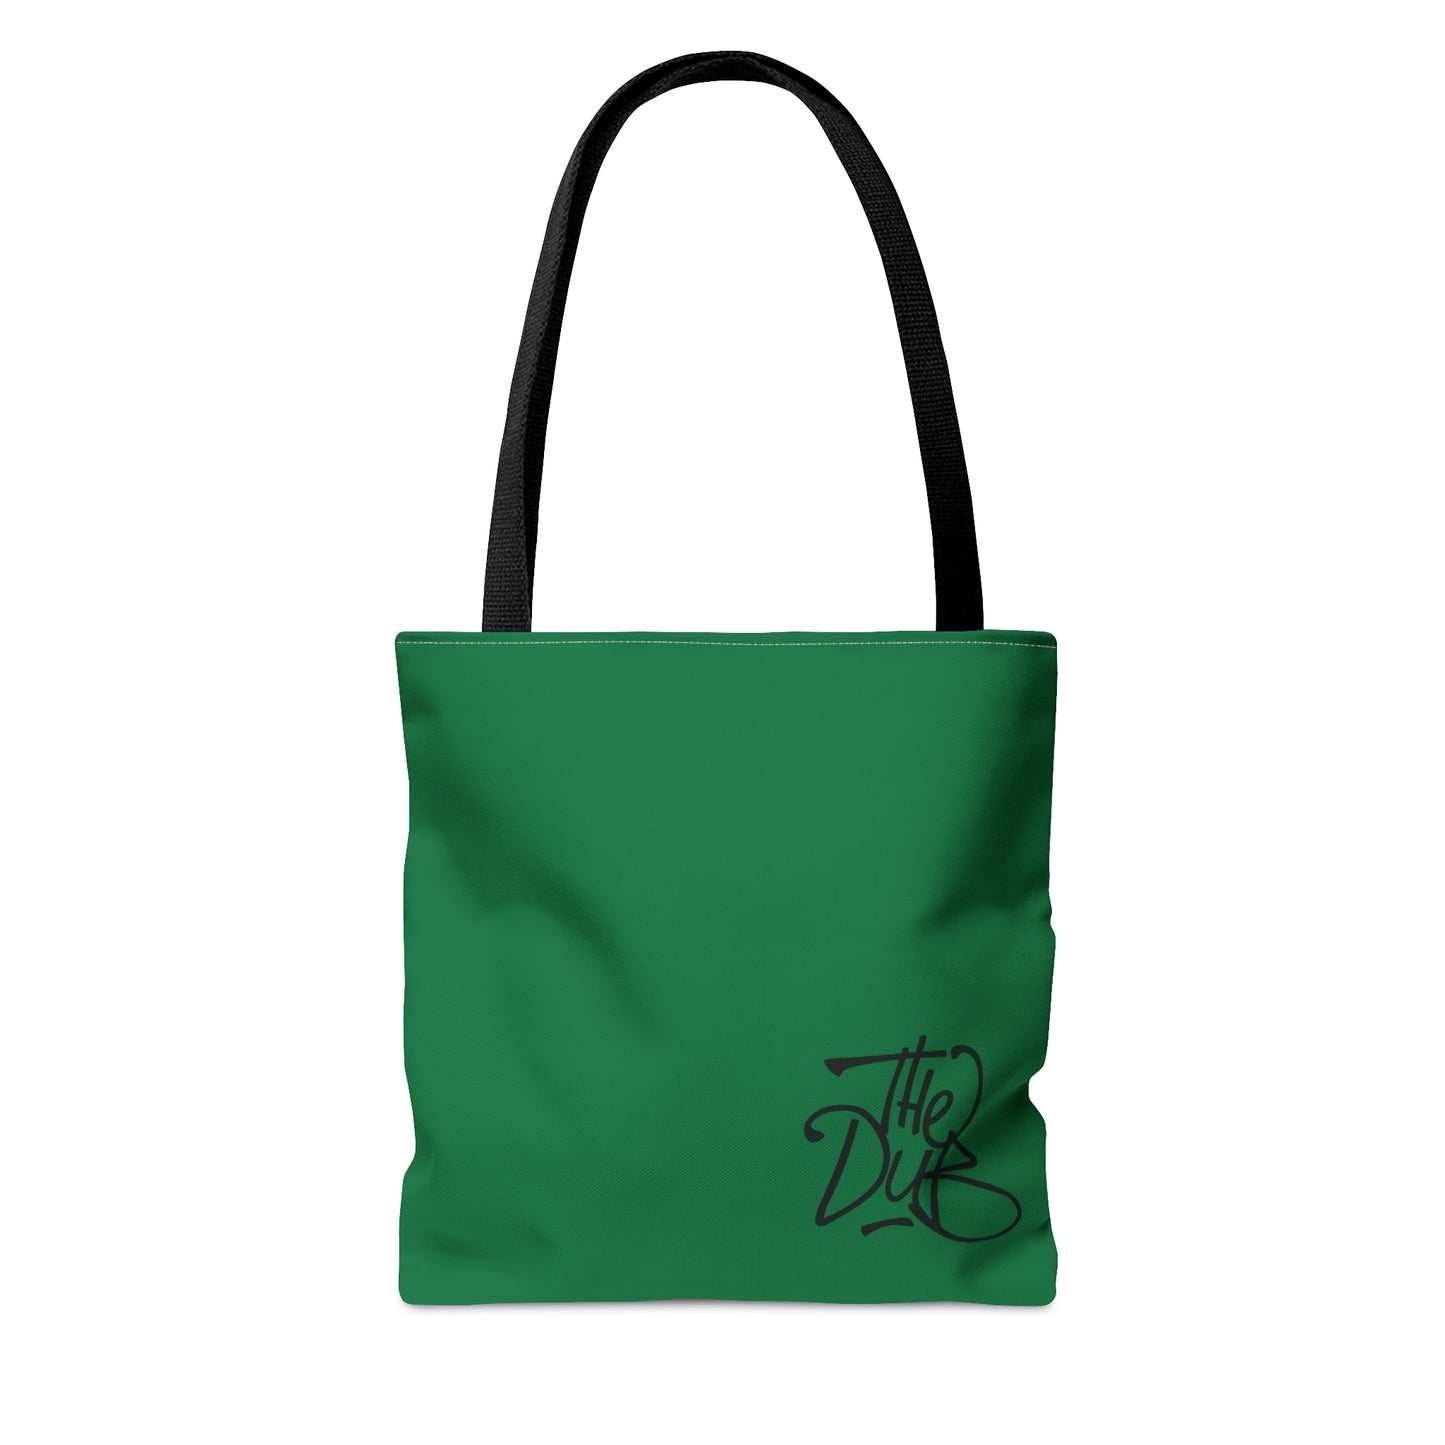 DubPDXGear - Green DubSac Tote Bag